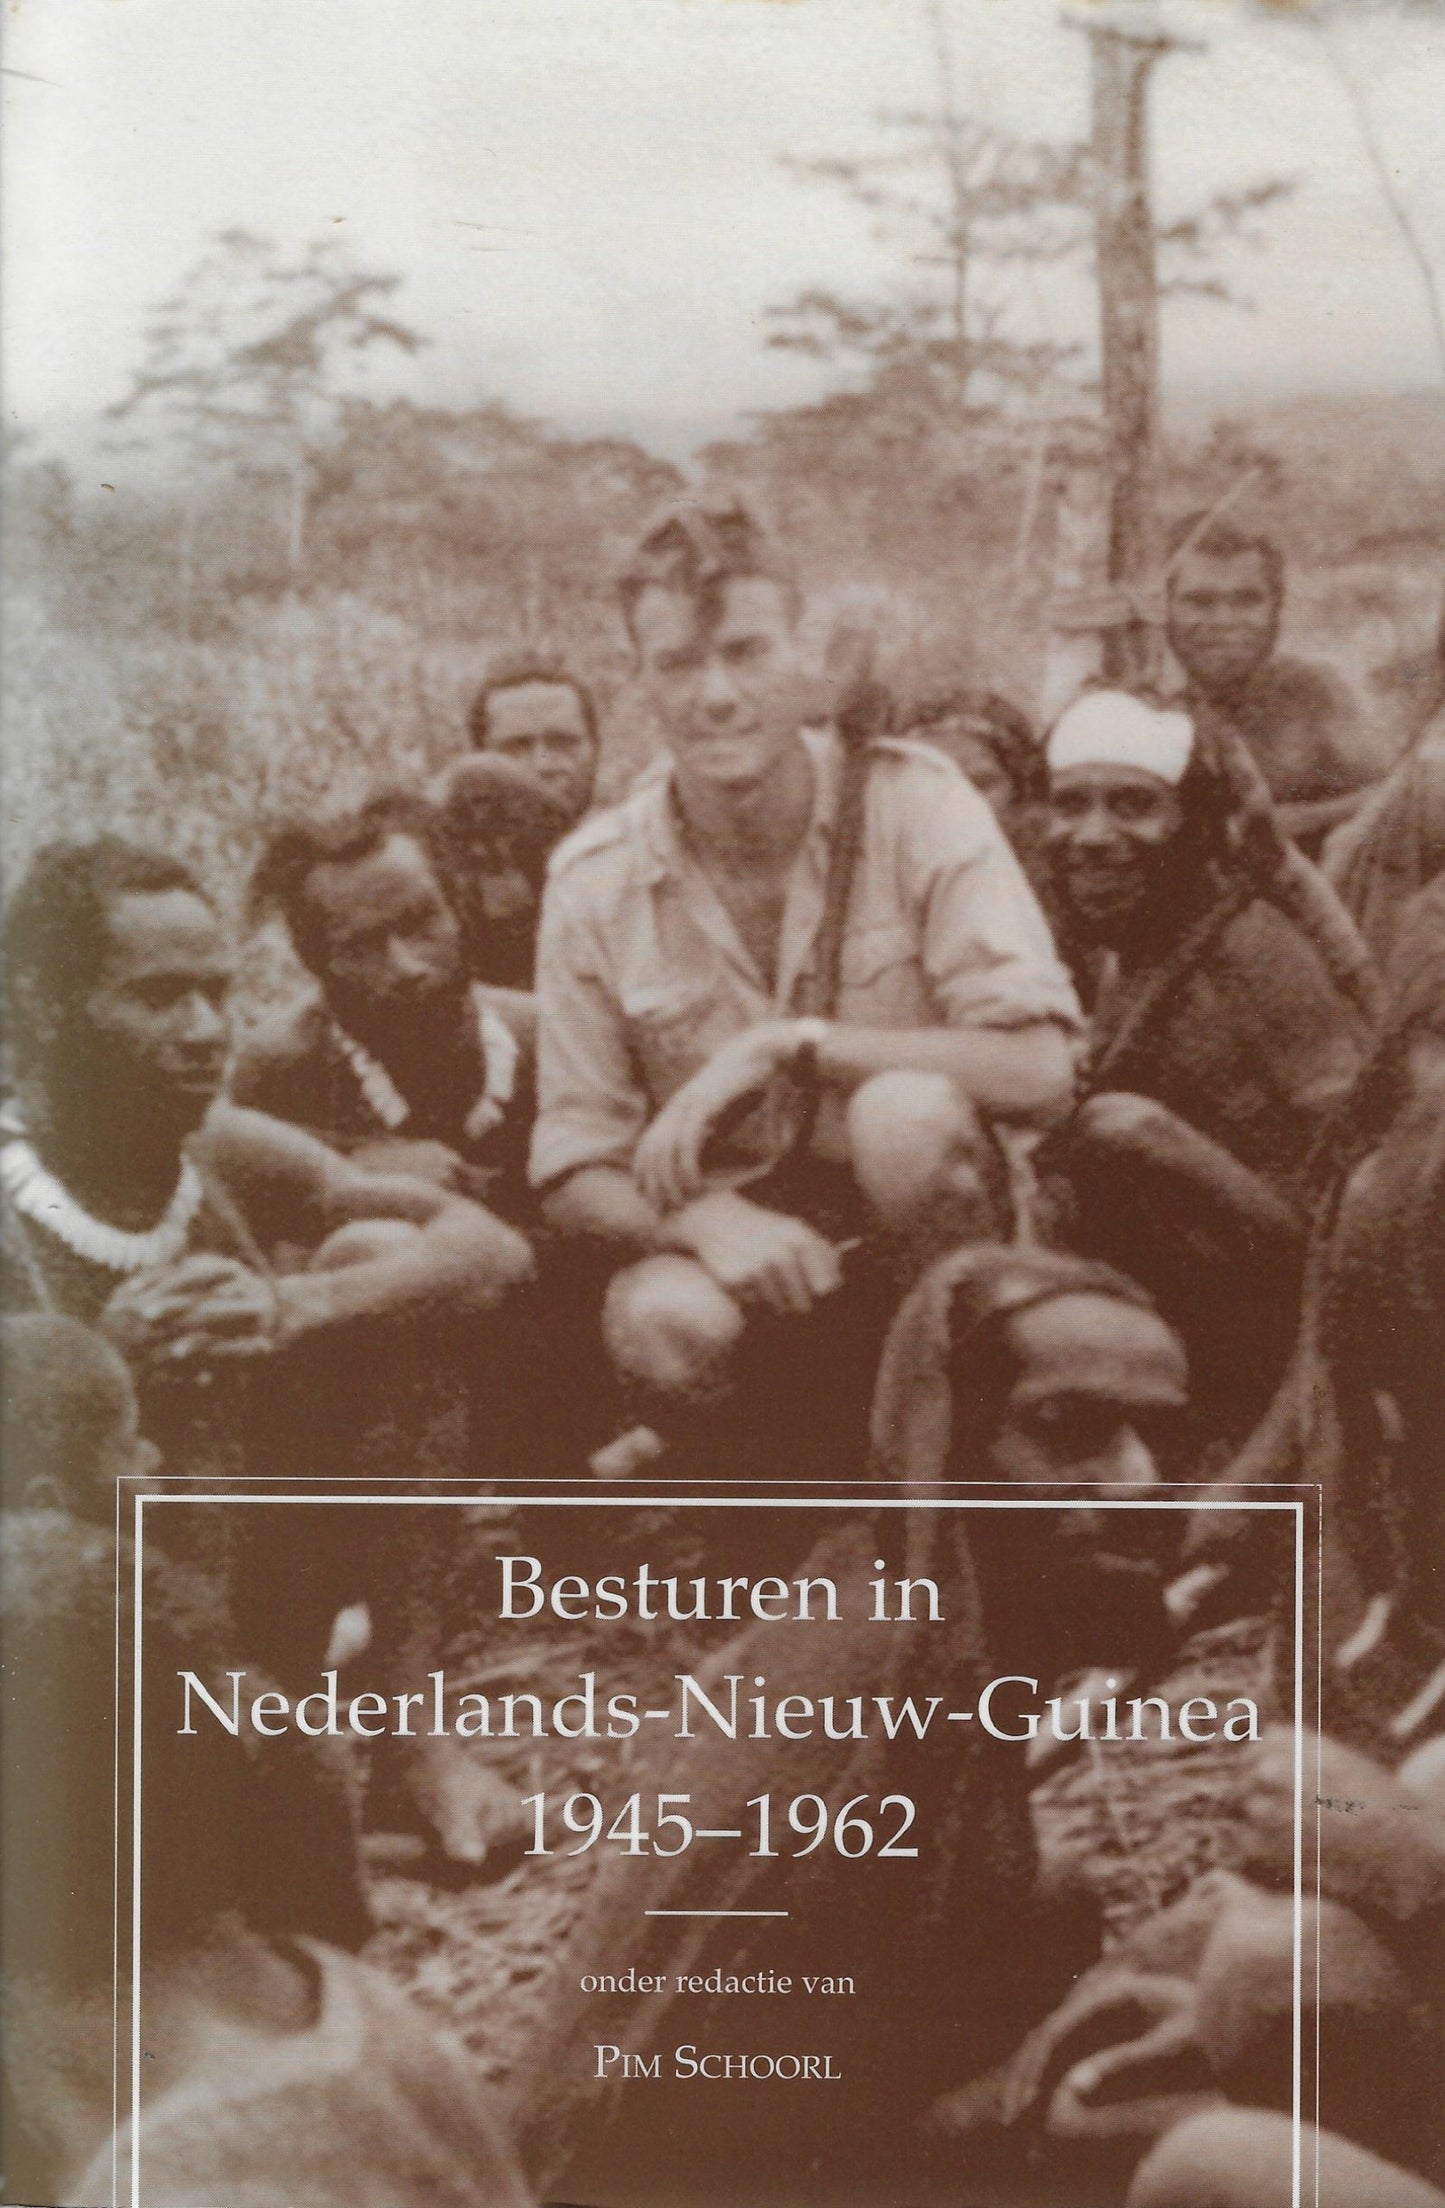 Besturen in Nederlands-Nieuw-Guinea, 1945-1962